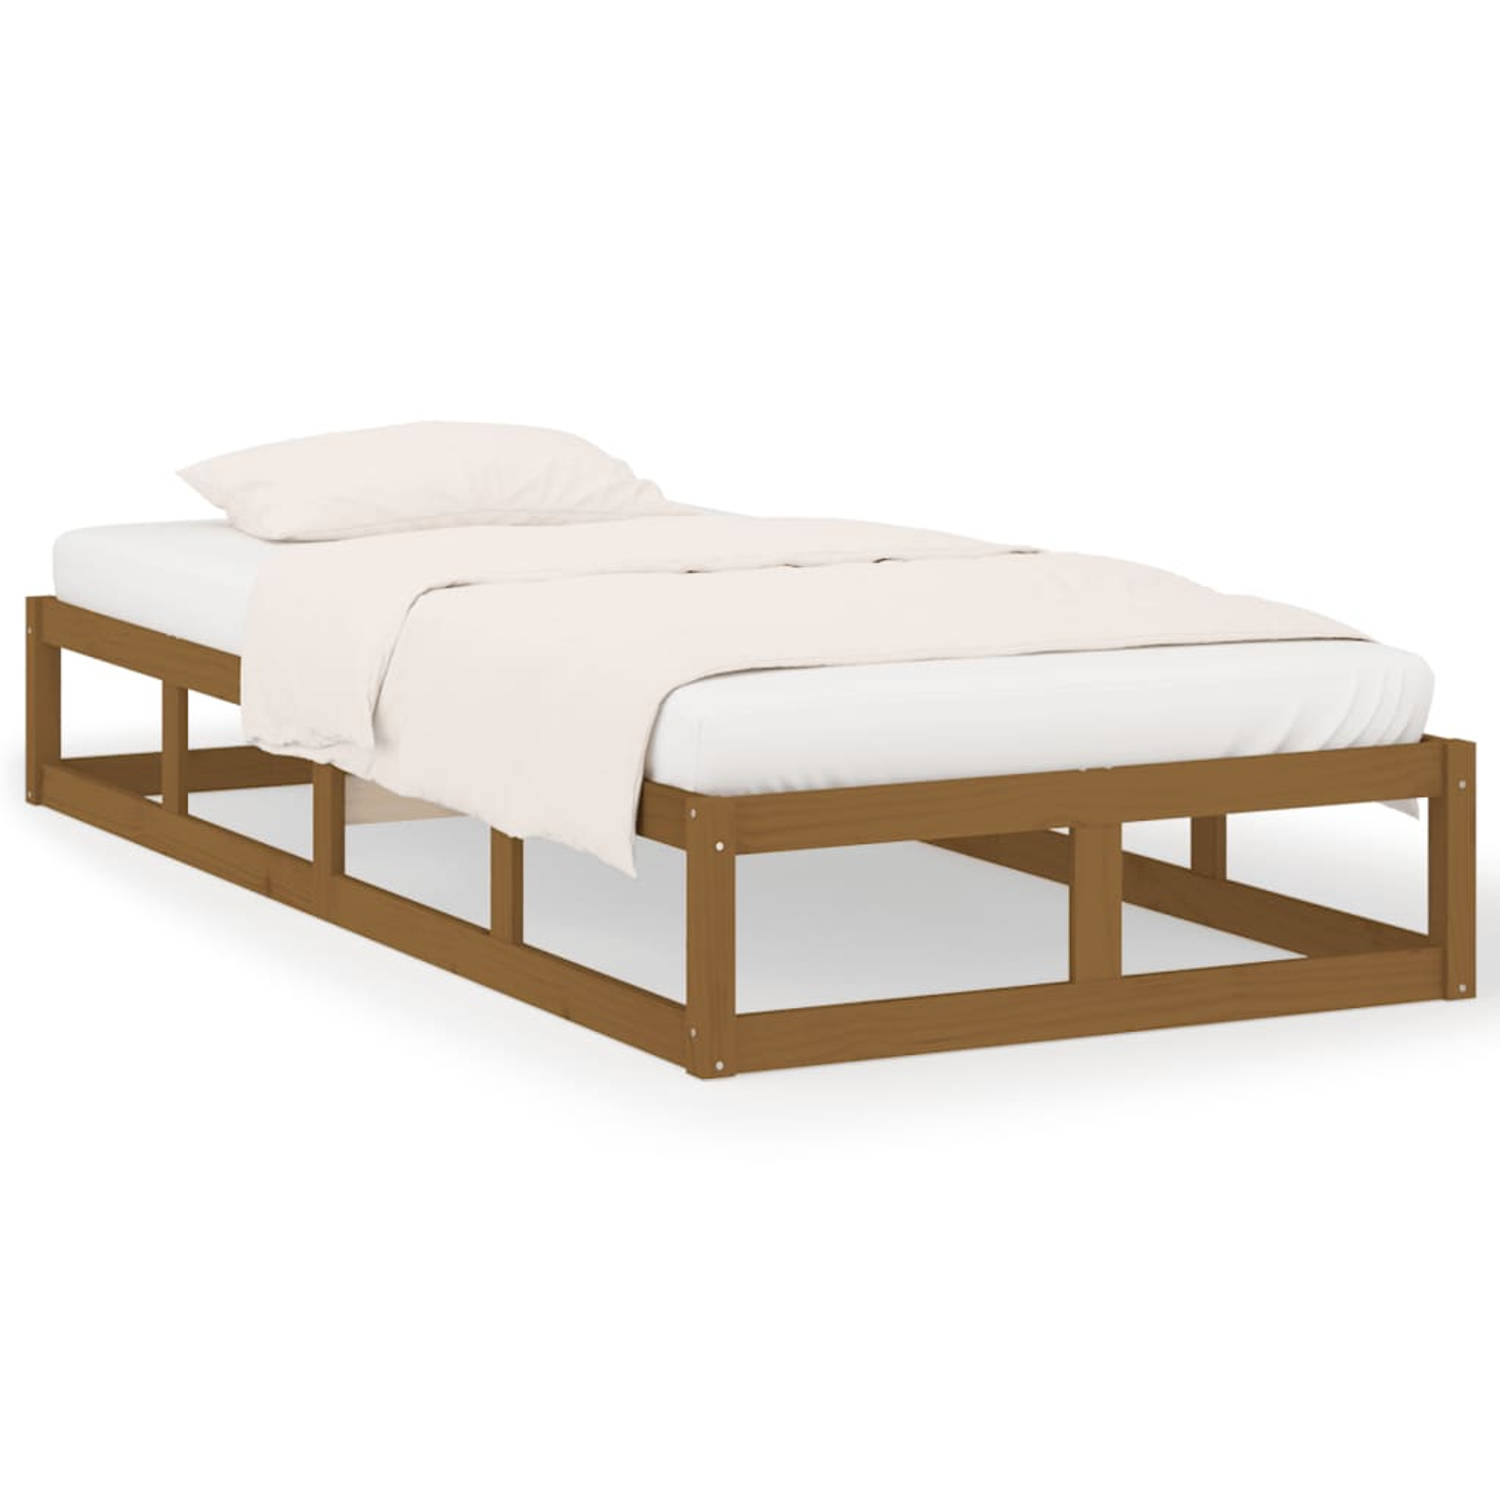 The Living Store Bedframe massief hout honingbruin 100x200 cm - Bedframe - Bedframes - Bed - Bedbodem - Ledikant - Bed Frame - Massief Houten Bedframe - Slaapmeubel - Eenpersoonsbe